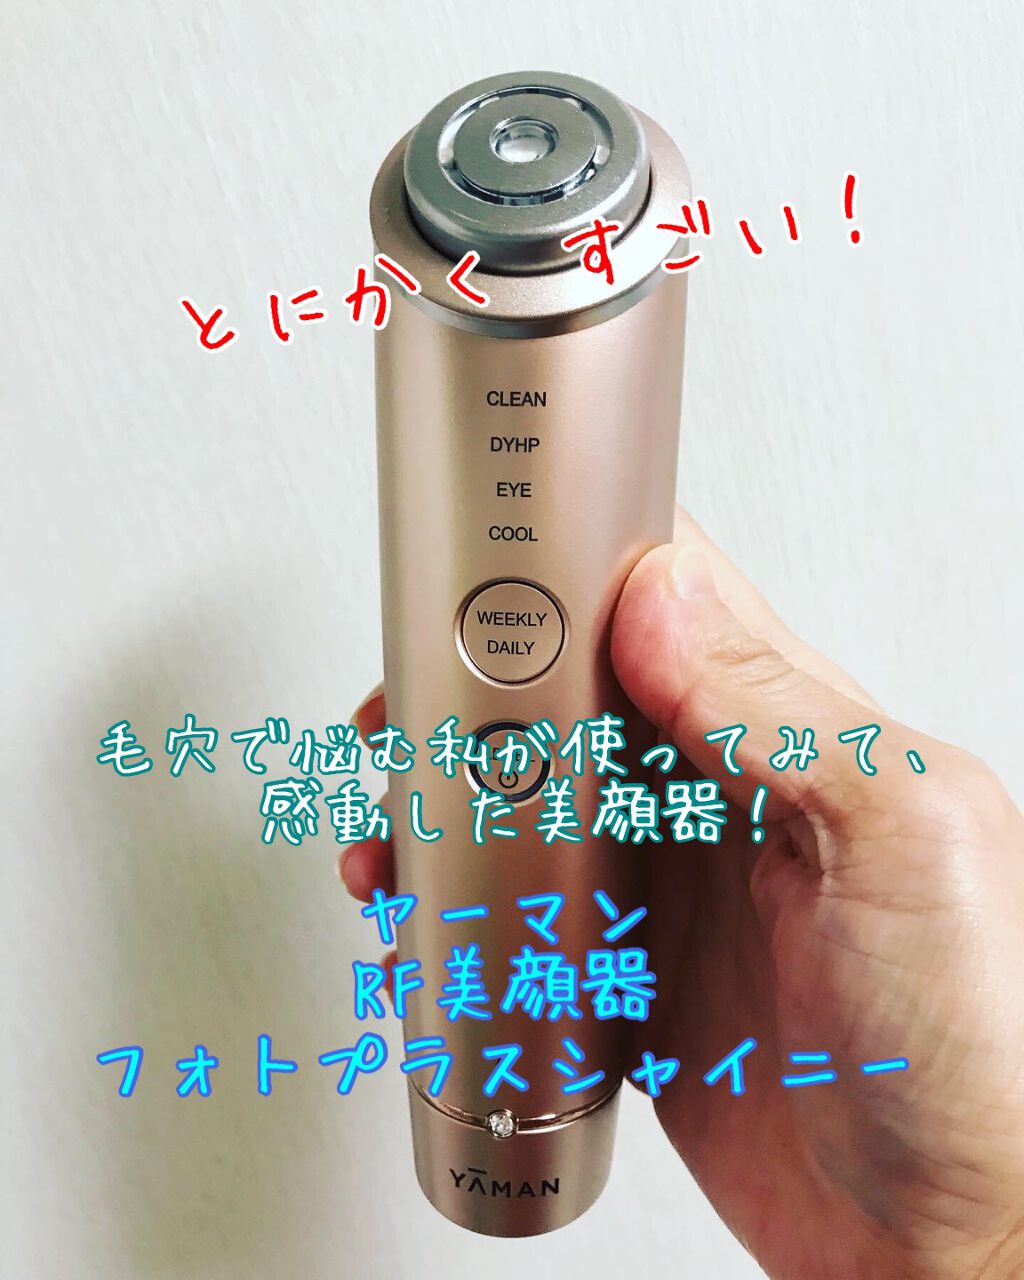 ヤーマン☆ RF美顔器 フォトプラス シャイニー スーパーマーケット割引